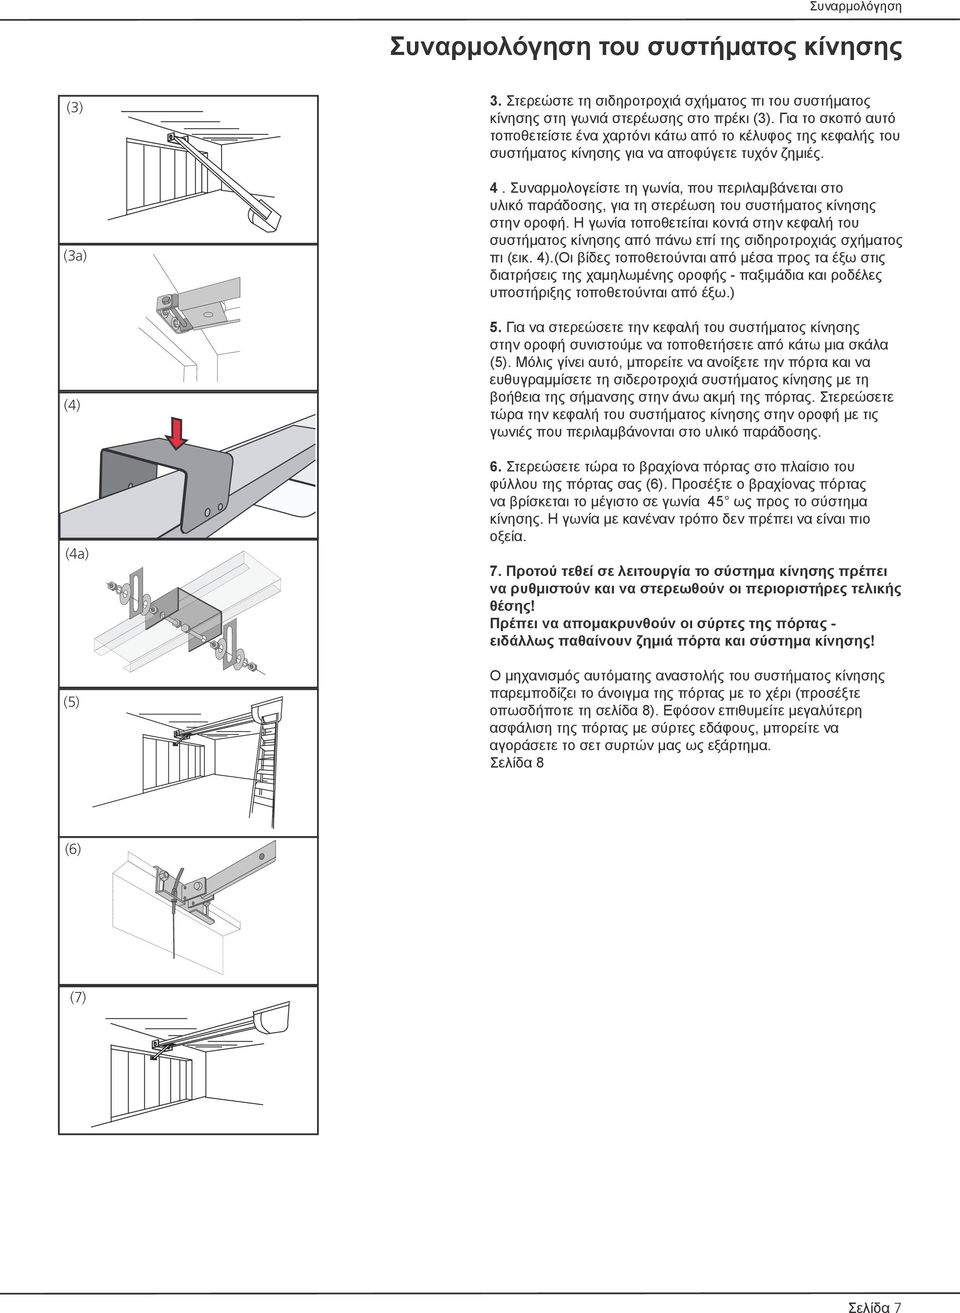 Συναρμολογείστε τη γωνία, που περιλαμβάνεται στο υλικό παράδοσης, για τη στερέωση του συστήματος κίνησης στην οροφή.